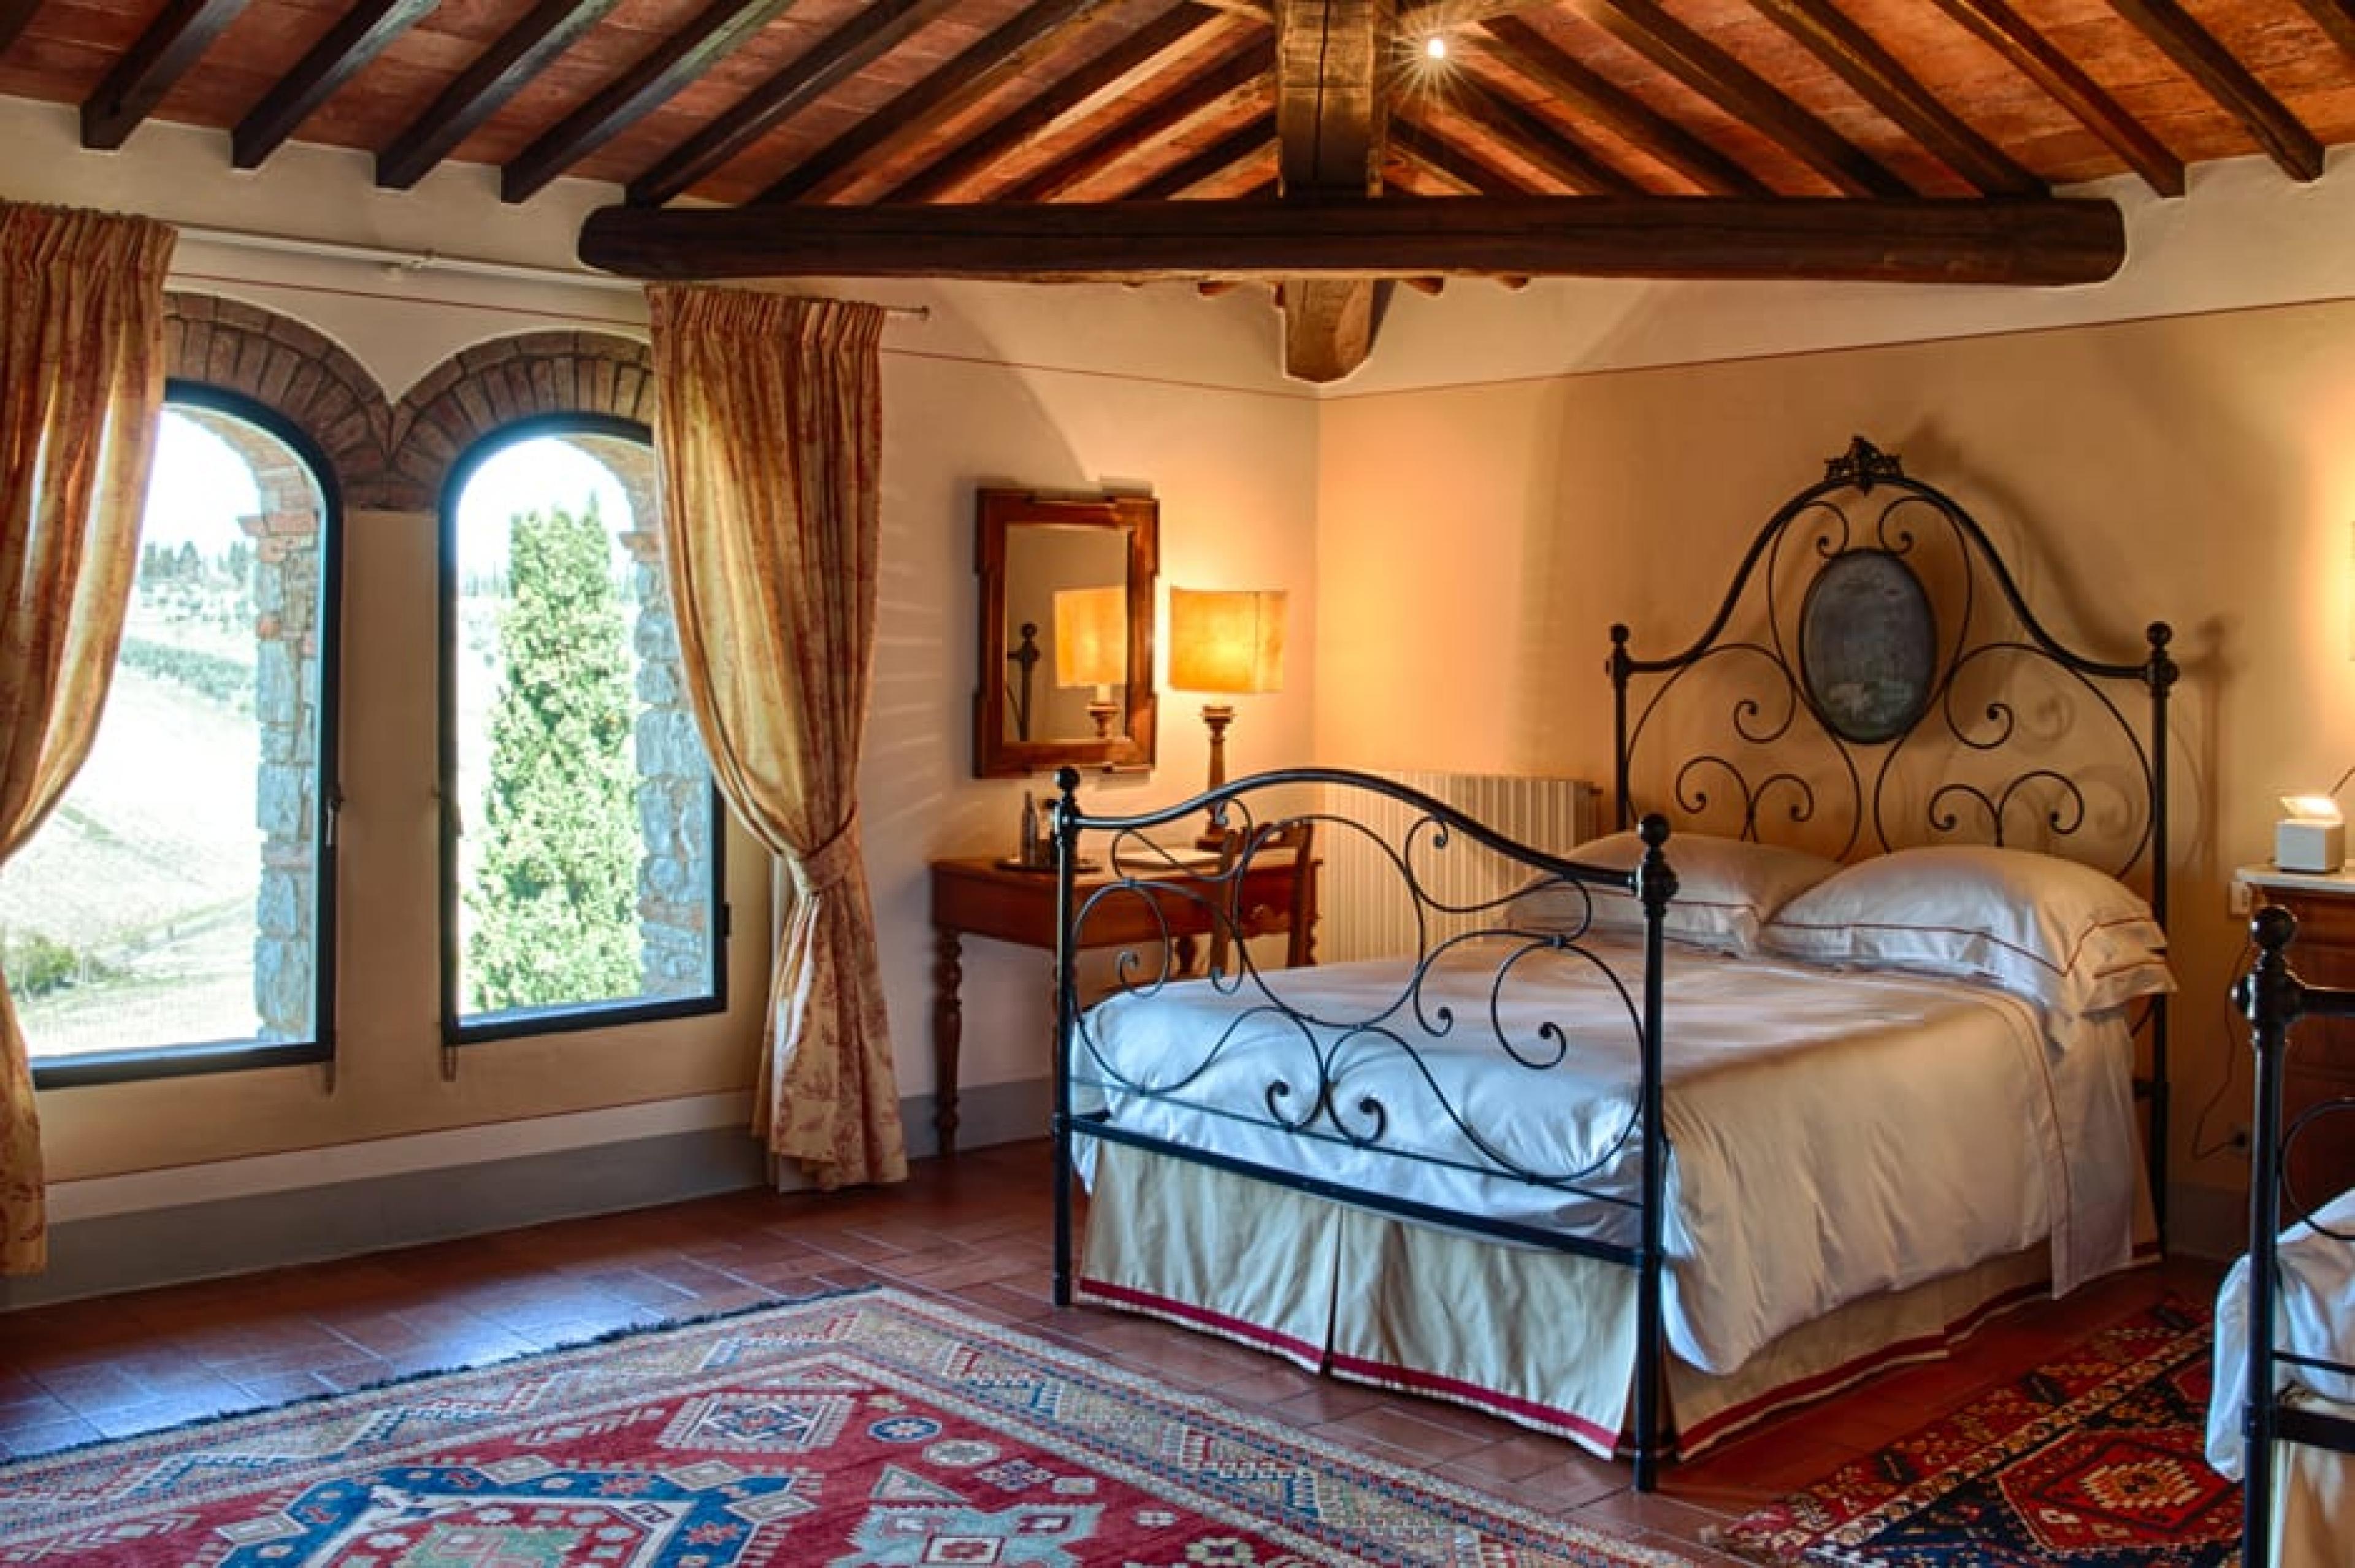 Bedroom at Castello di Ama, Tuscany, Italy